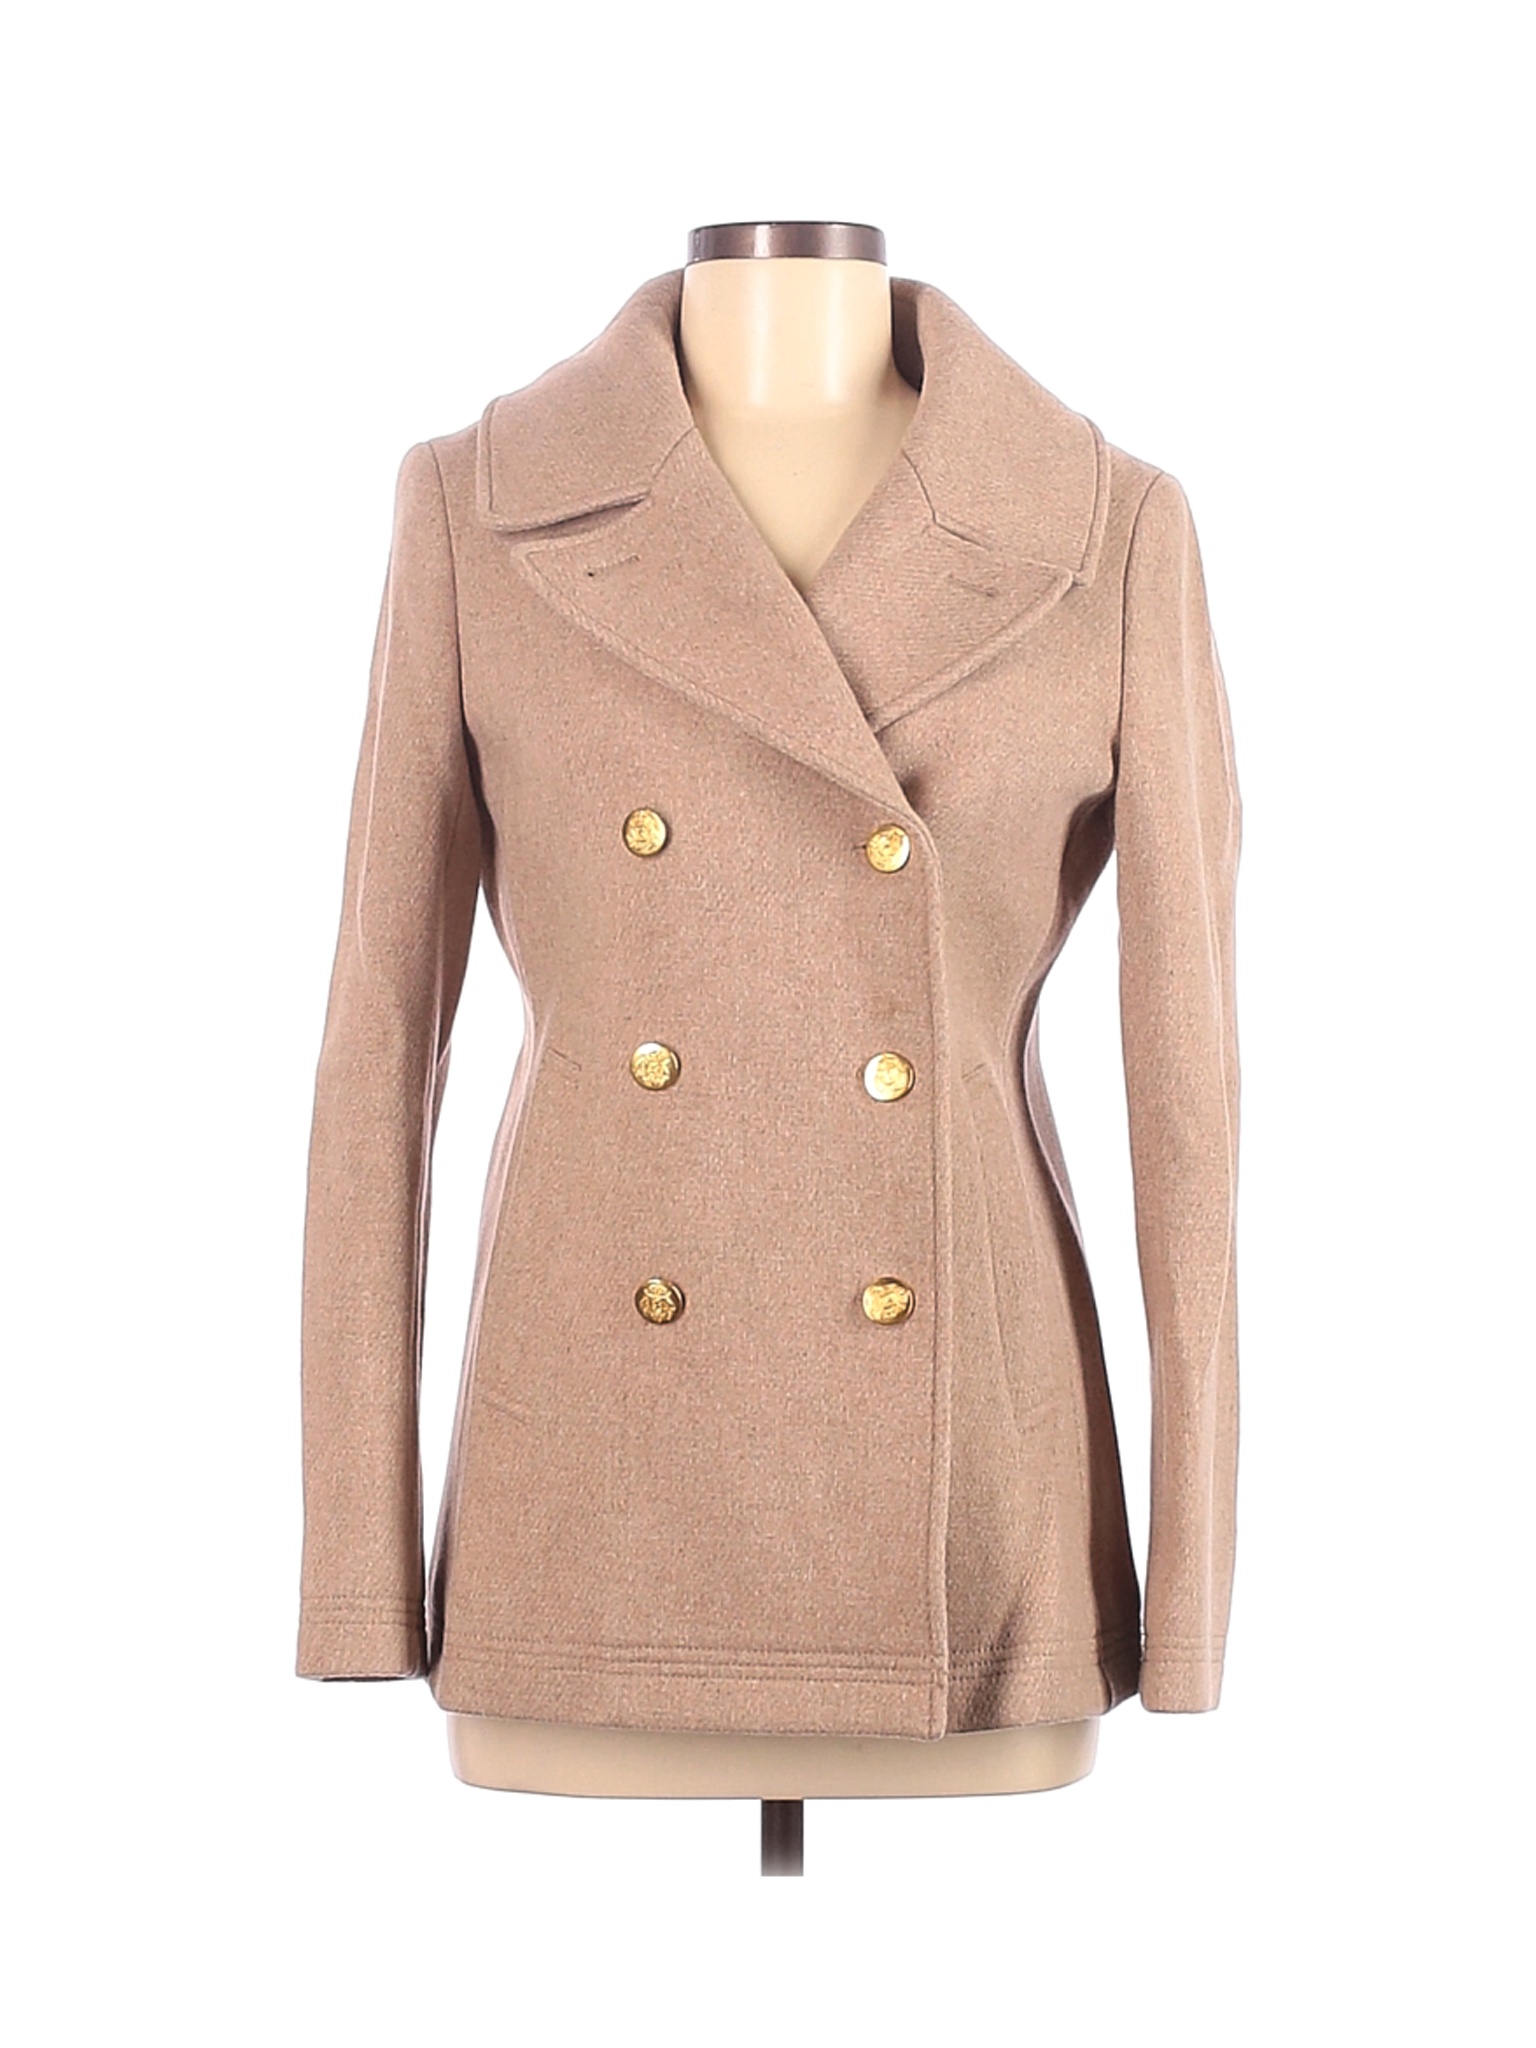 J.Crew Women Brown Wool Coat 6 | eBay